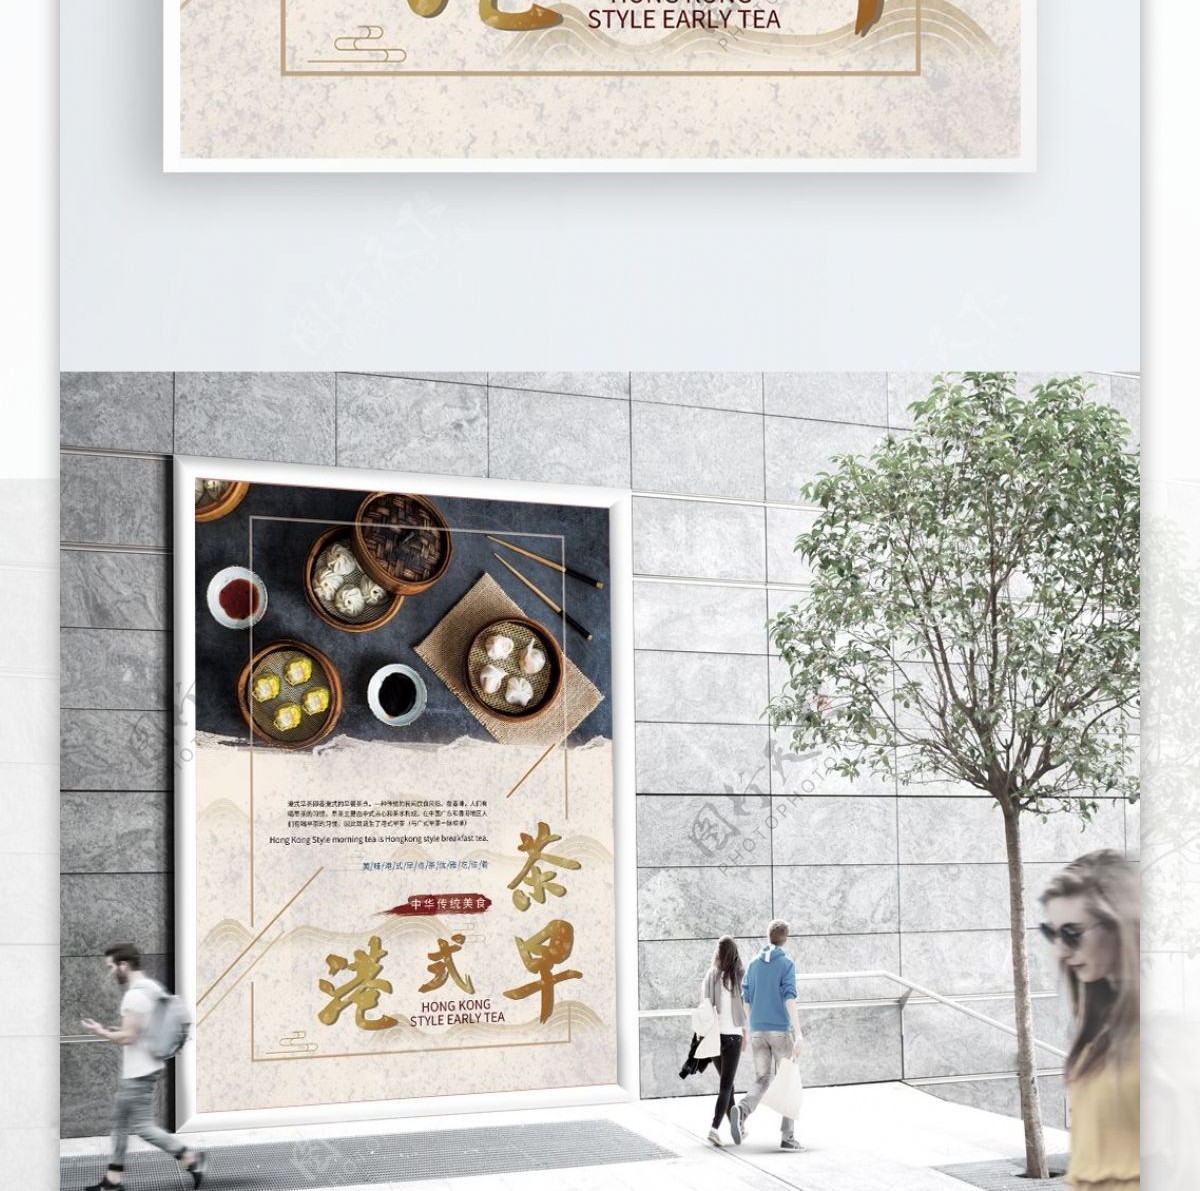 原创简约纹理金色字体港式美食早茶海报